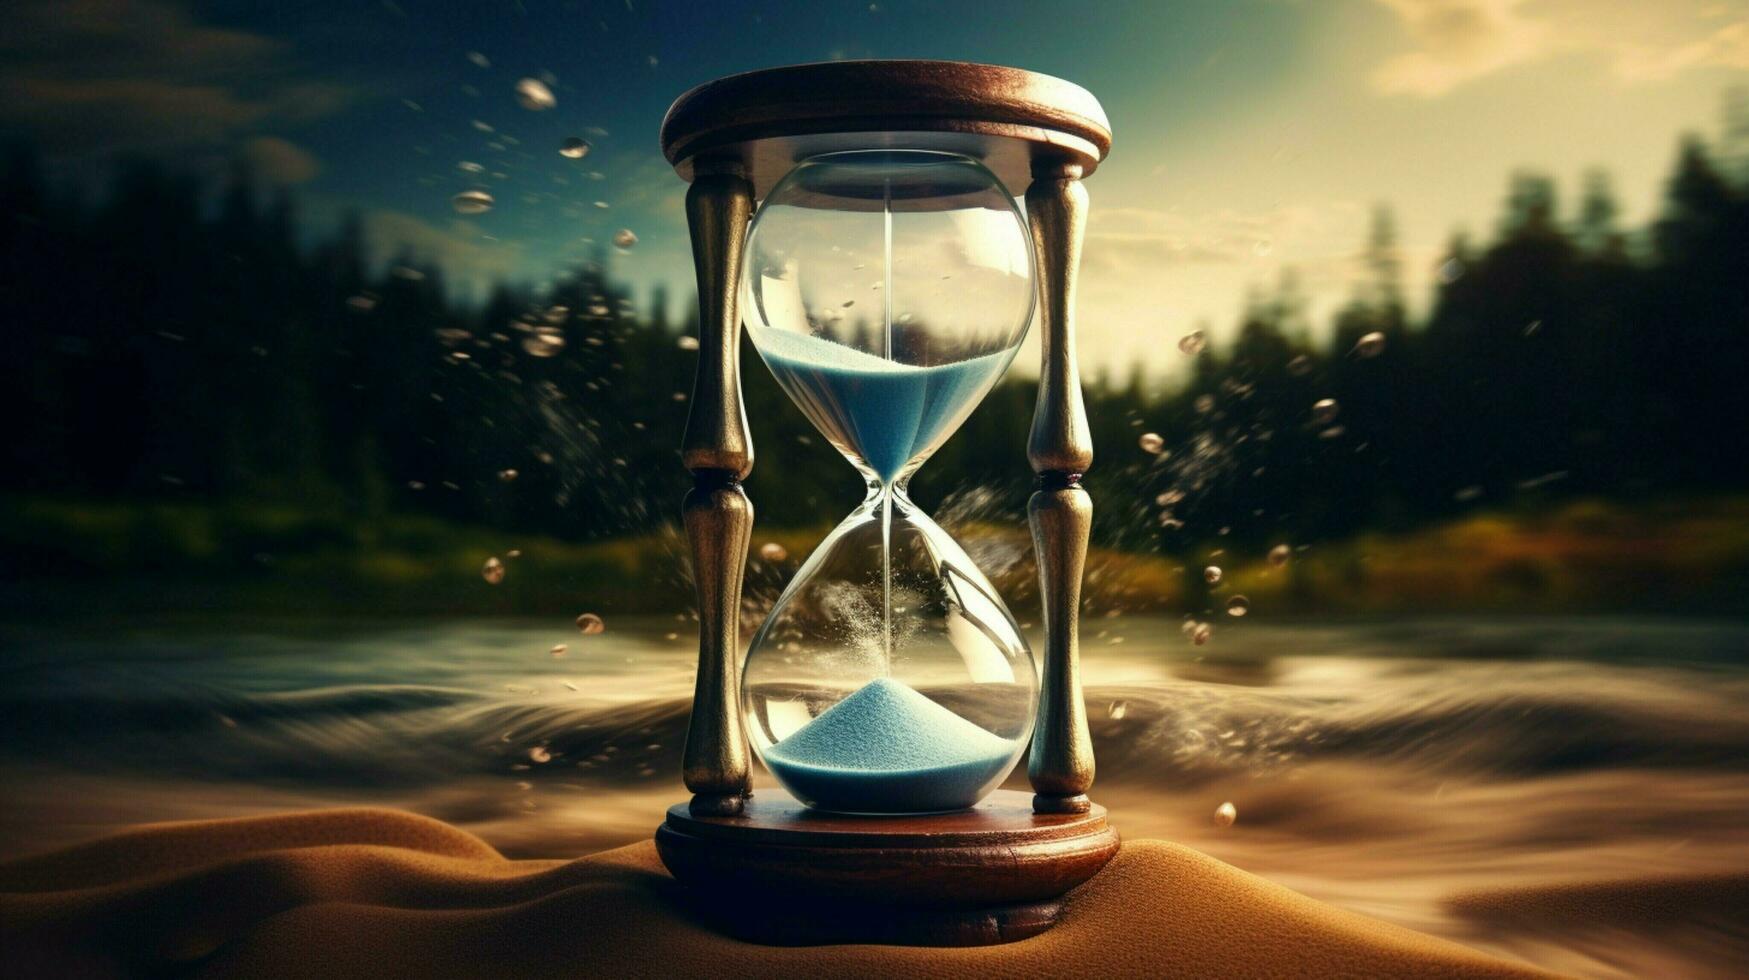 tid flöden tycka om sand i ett timglas foto